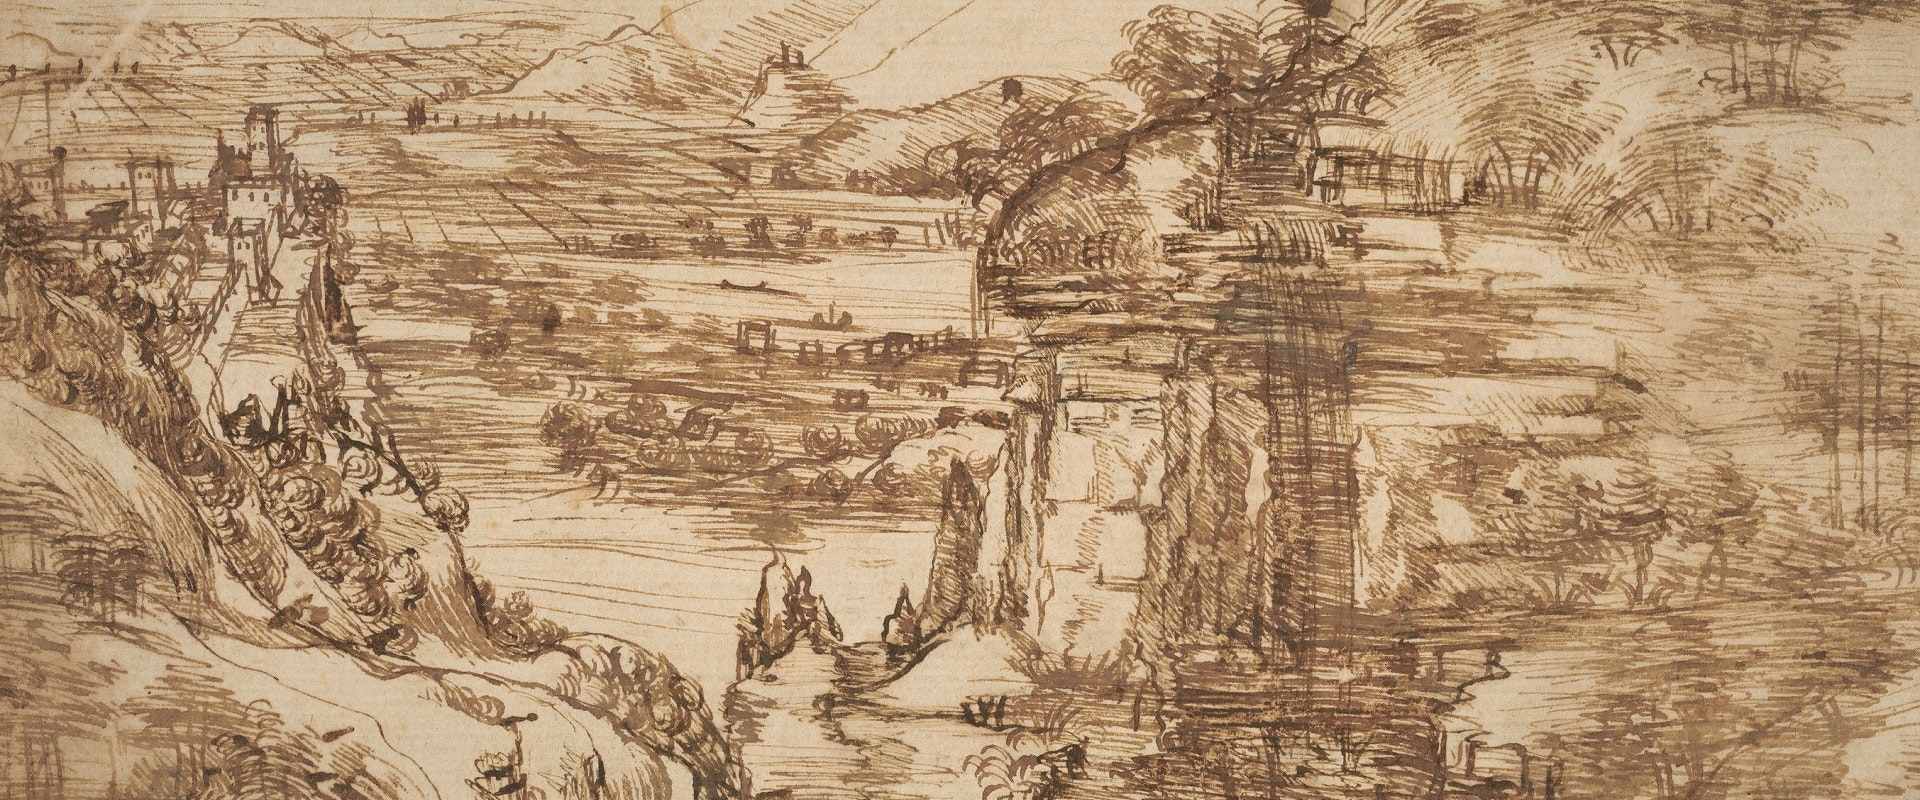 The diagnostic campaign of the Opificio delle Pietre Dure on the first landscape by Leonardo